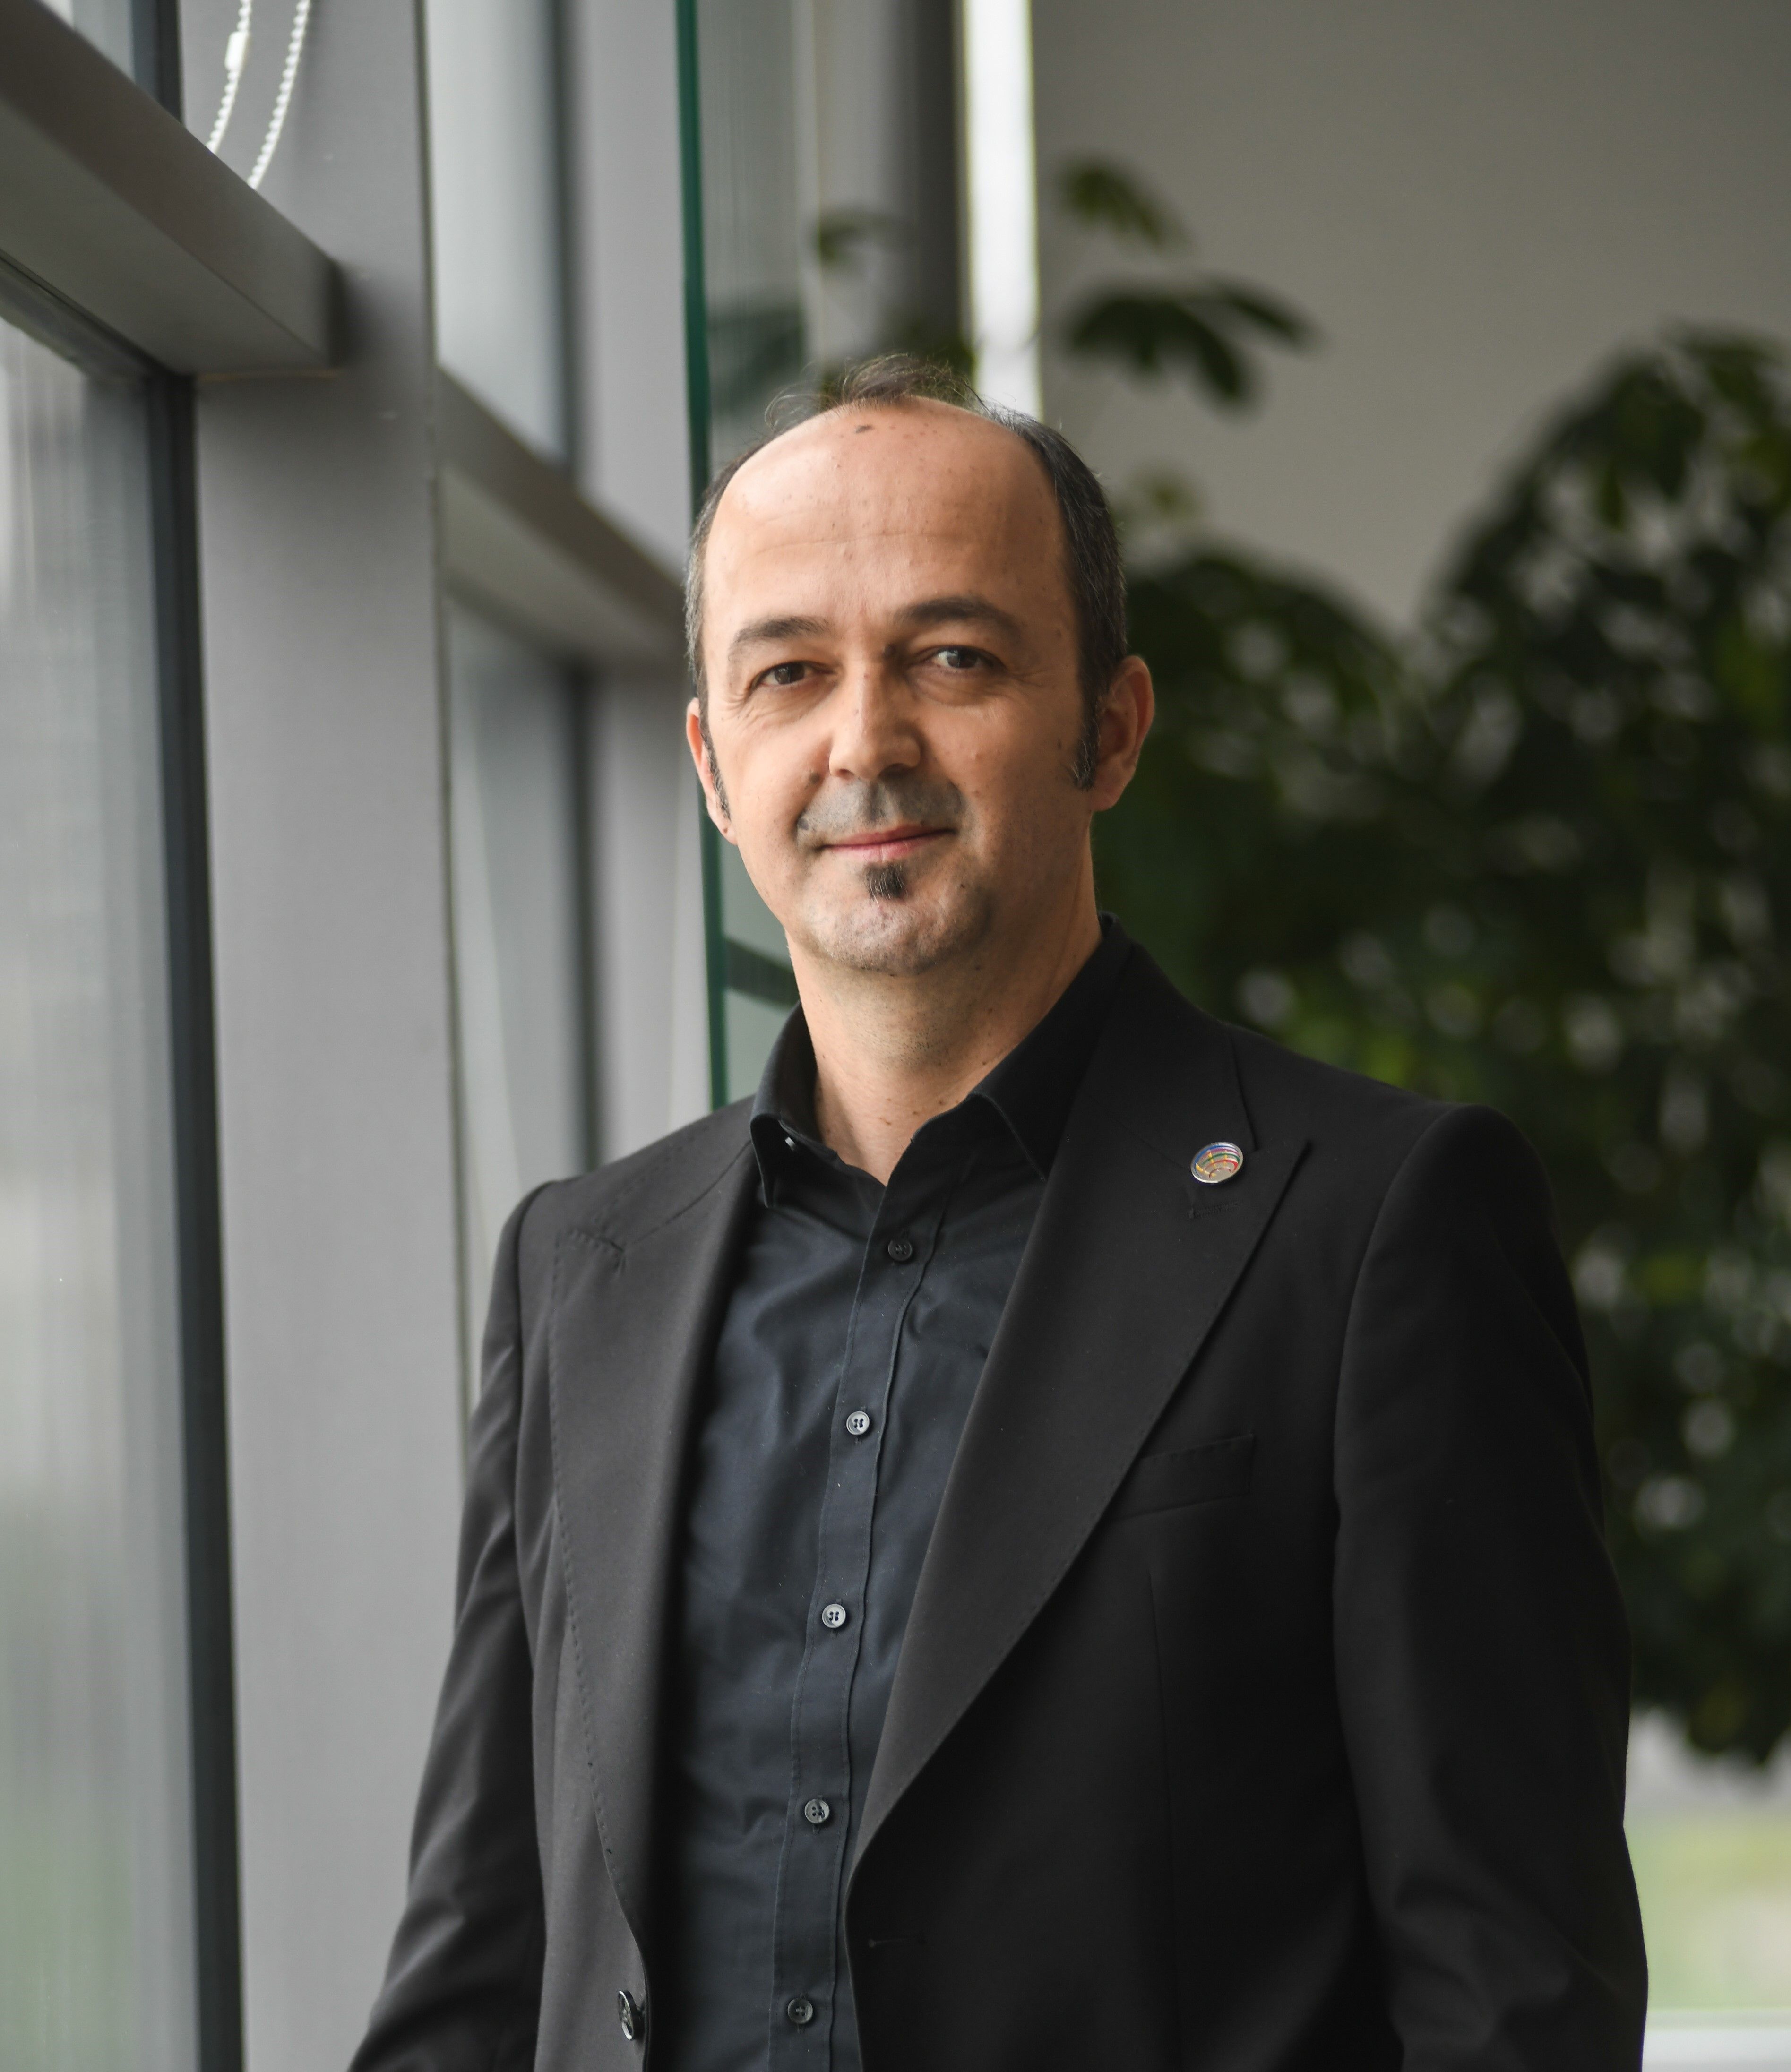 Visar Paçarada - Vice Chairman of the Board